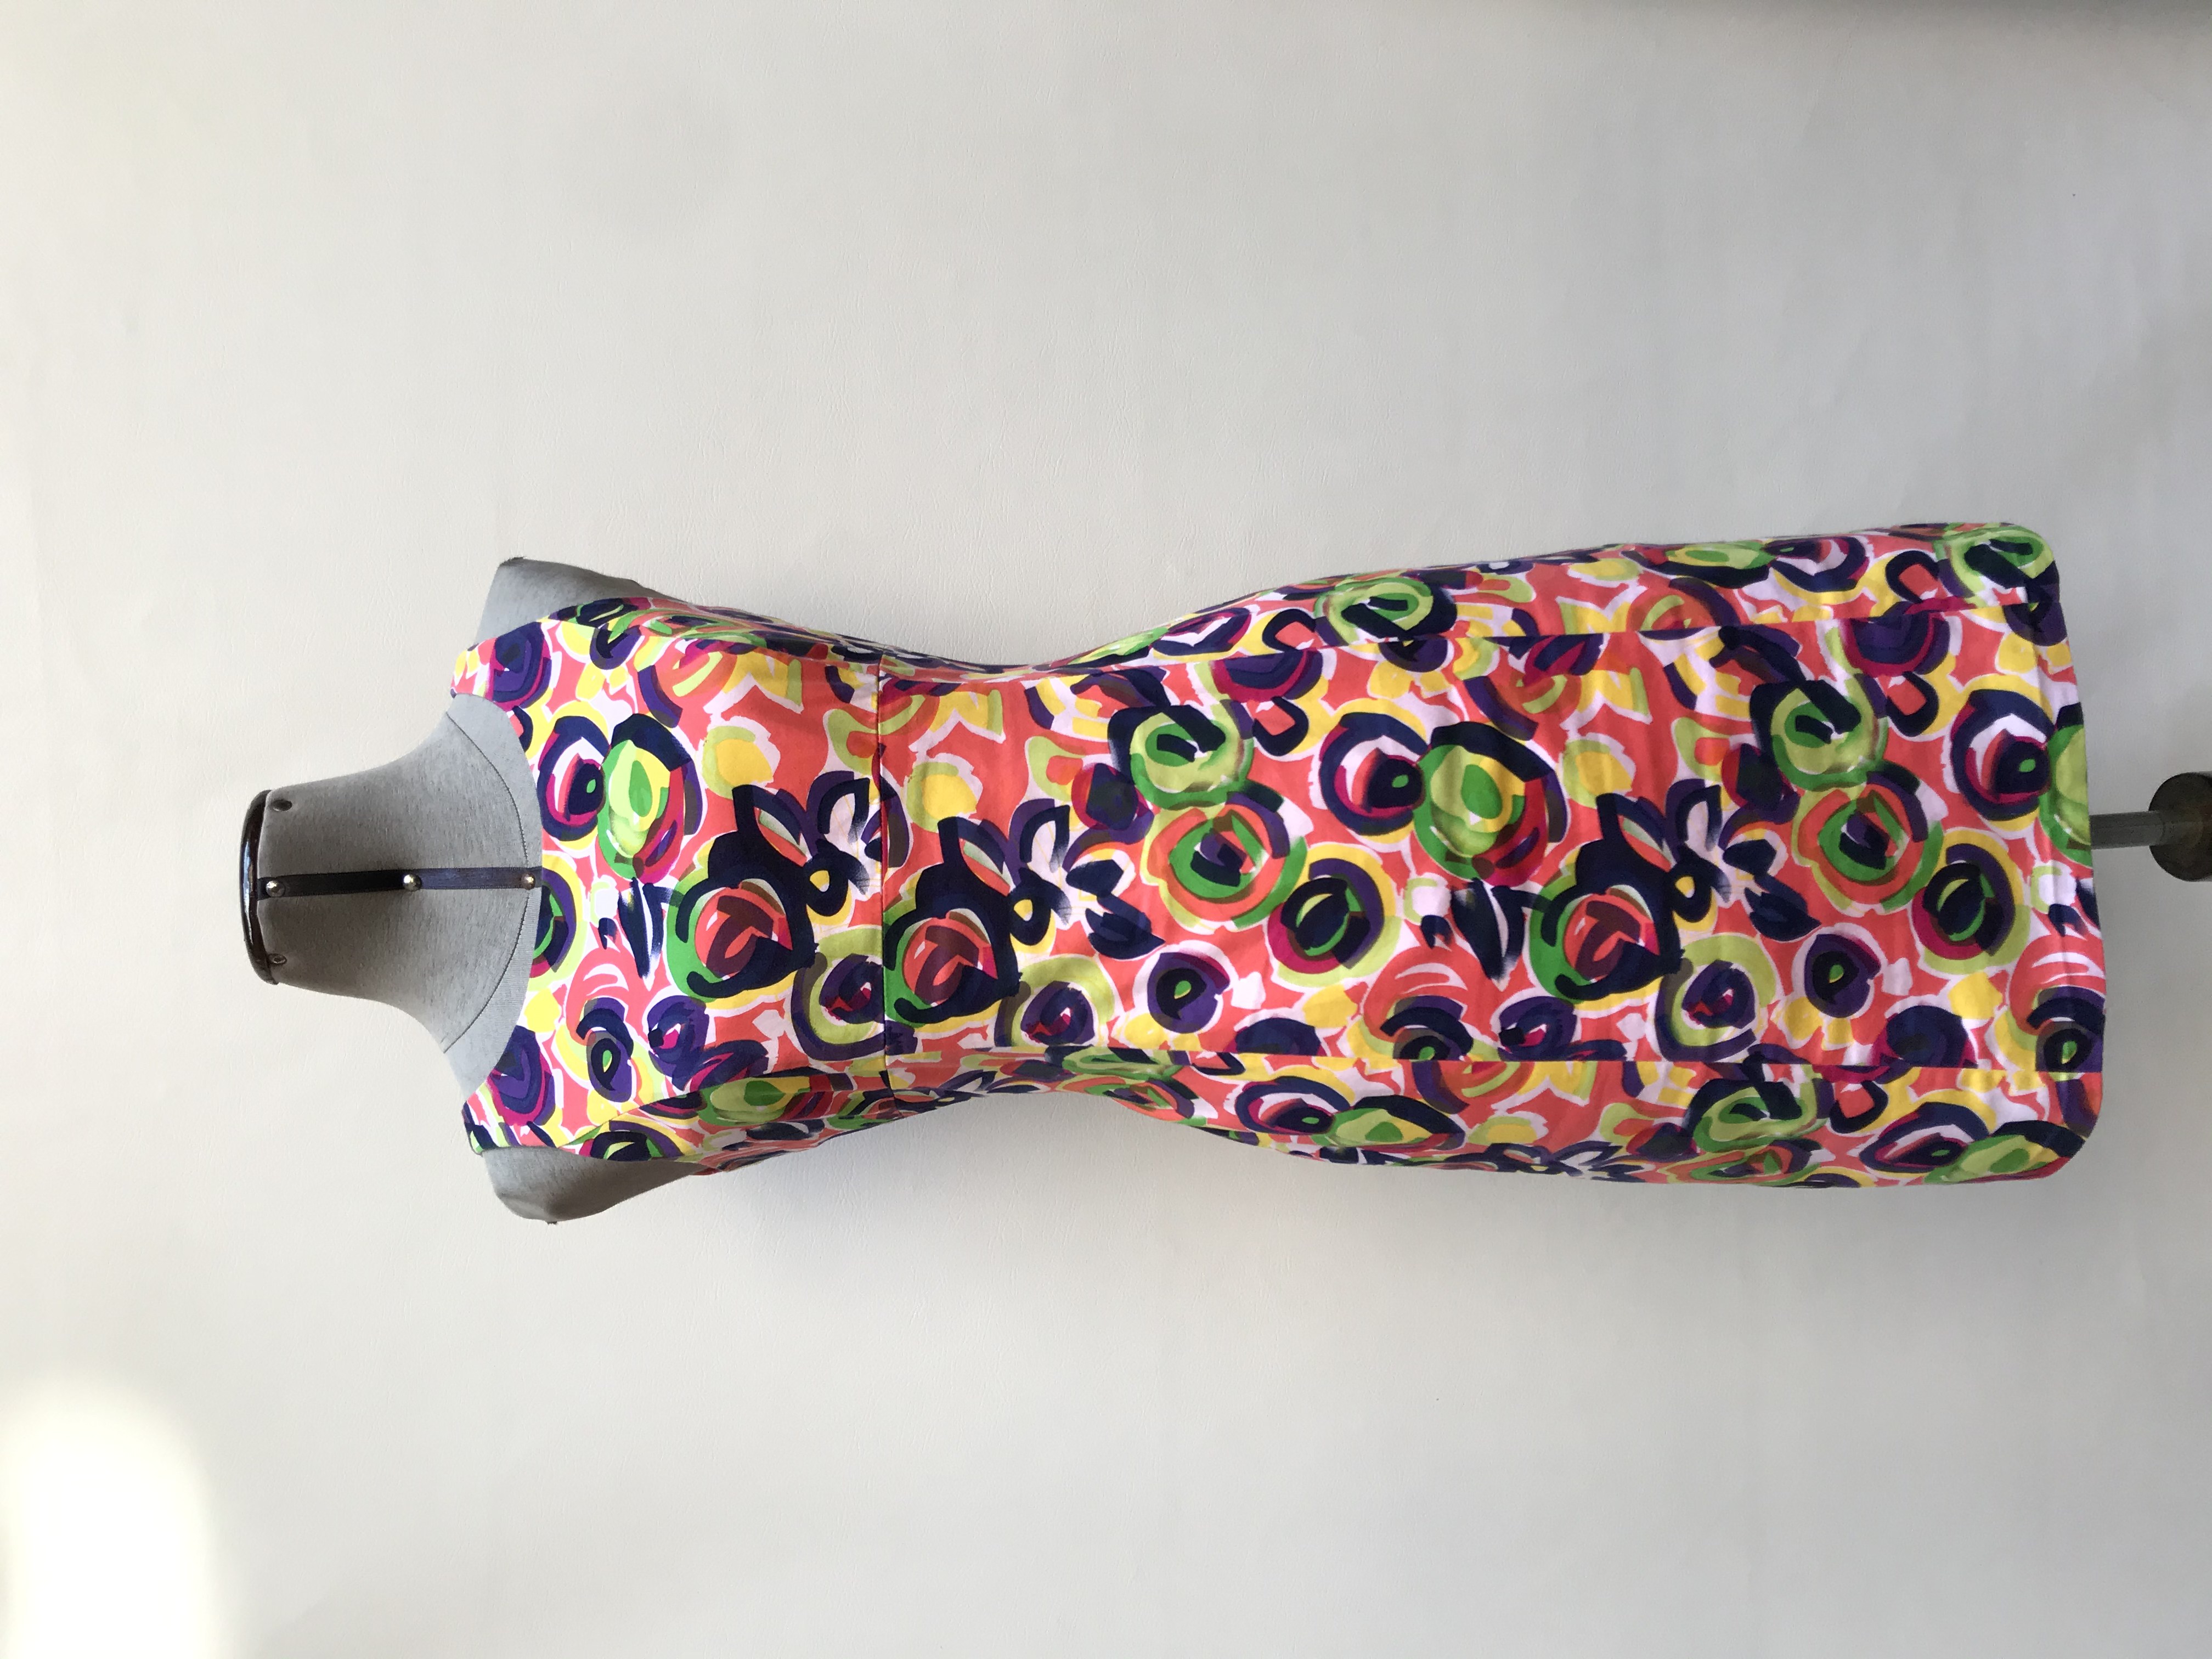 Vestido coral con estampado gráfico multicolor, corte recto, forrado, con cierre posterior, tela tipo algodón.
Talla S